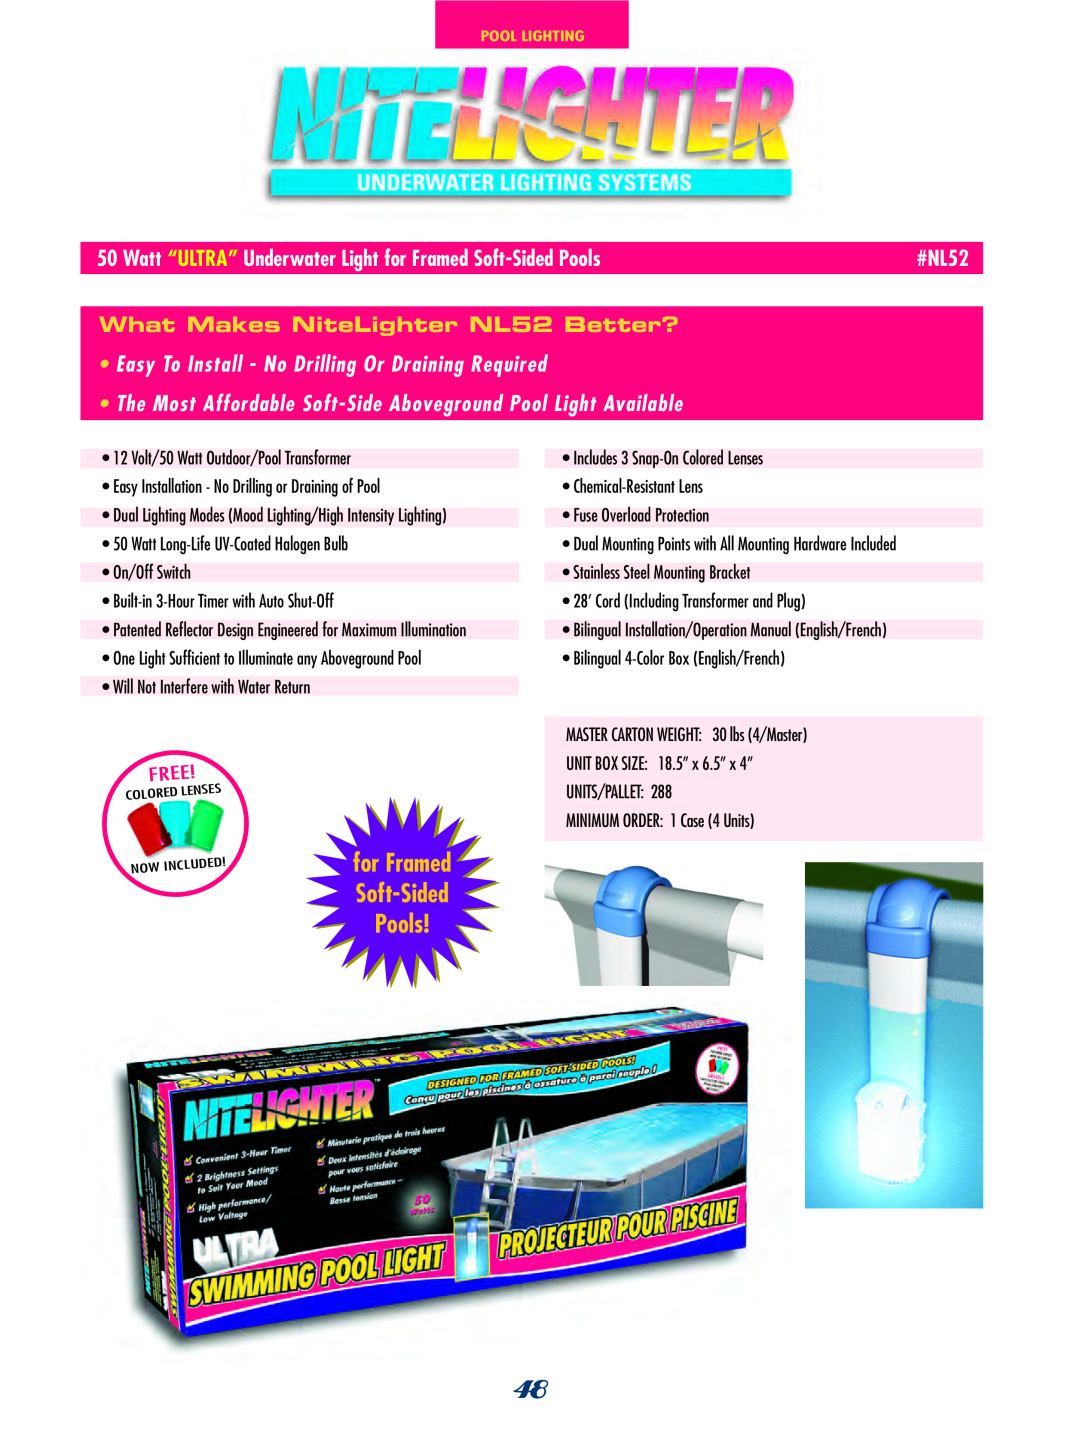 SmartPool Inc NC31 manual #NL52, What Makes NiteLighter NL52 Better? 